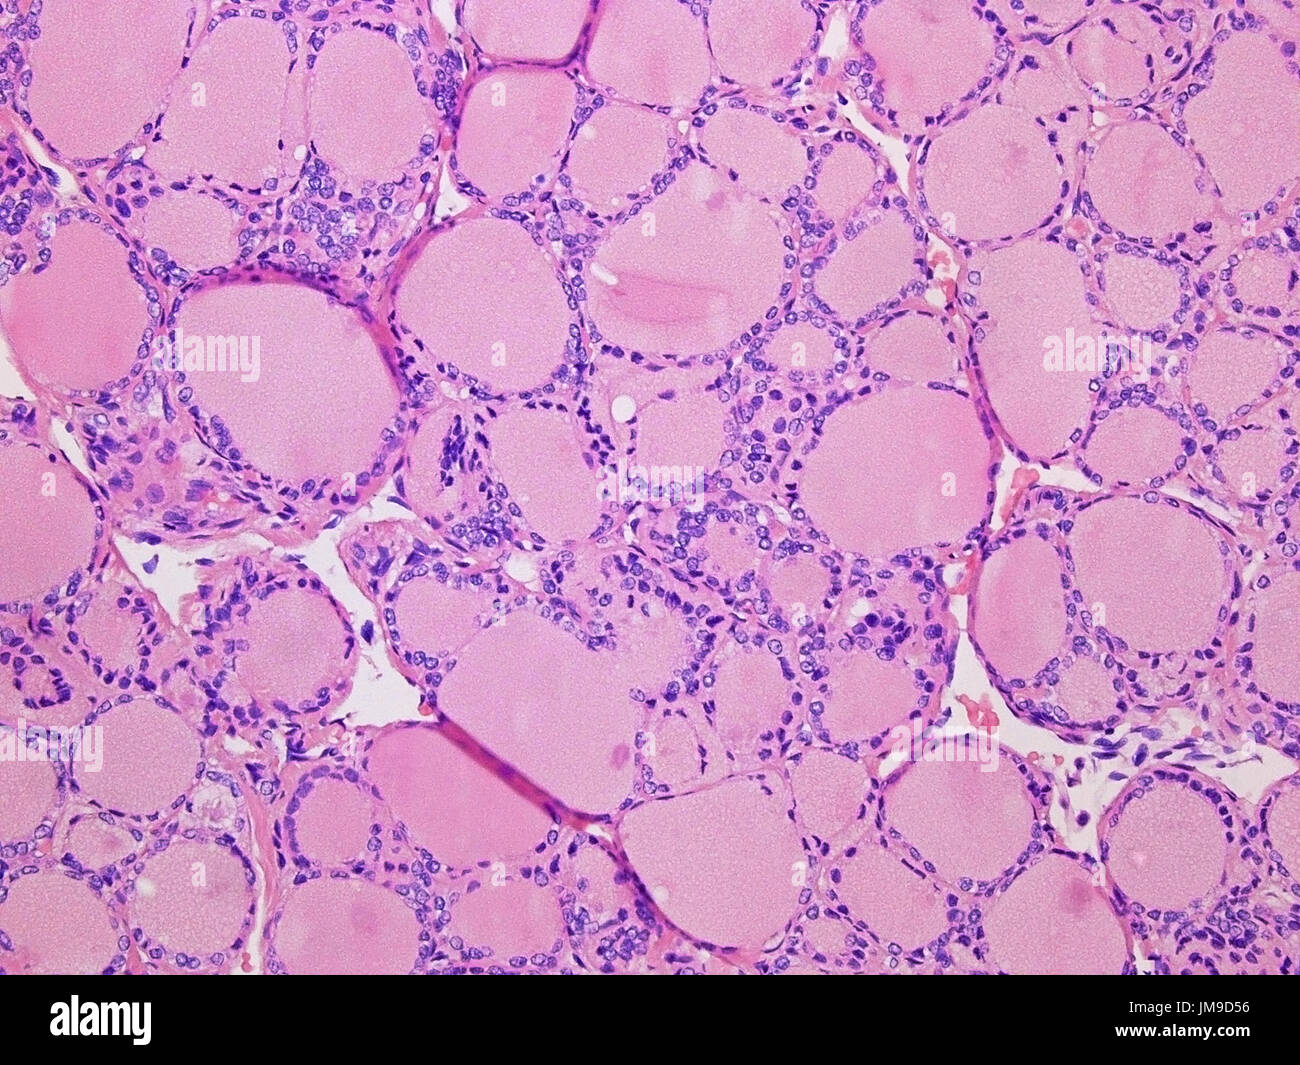 Colloïde de la glande thyroïde à l'200x grossissement avec Haemotoxylin la coloration et l'éosine. Banque D'Images